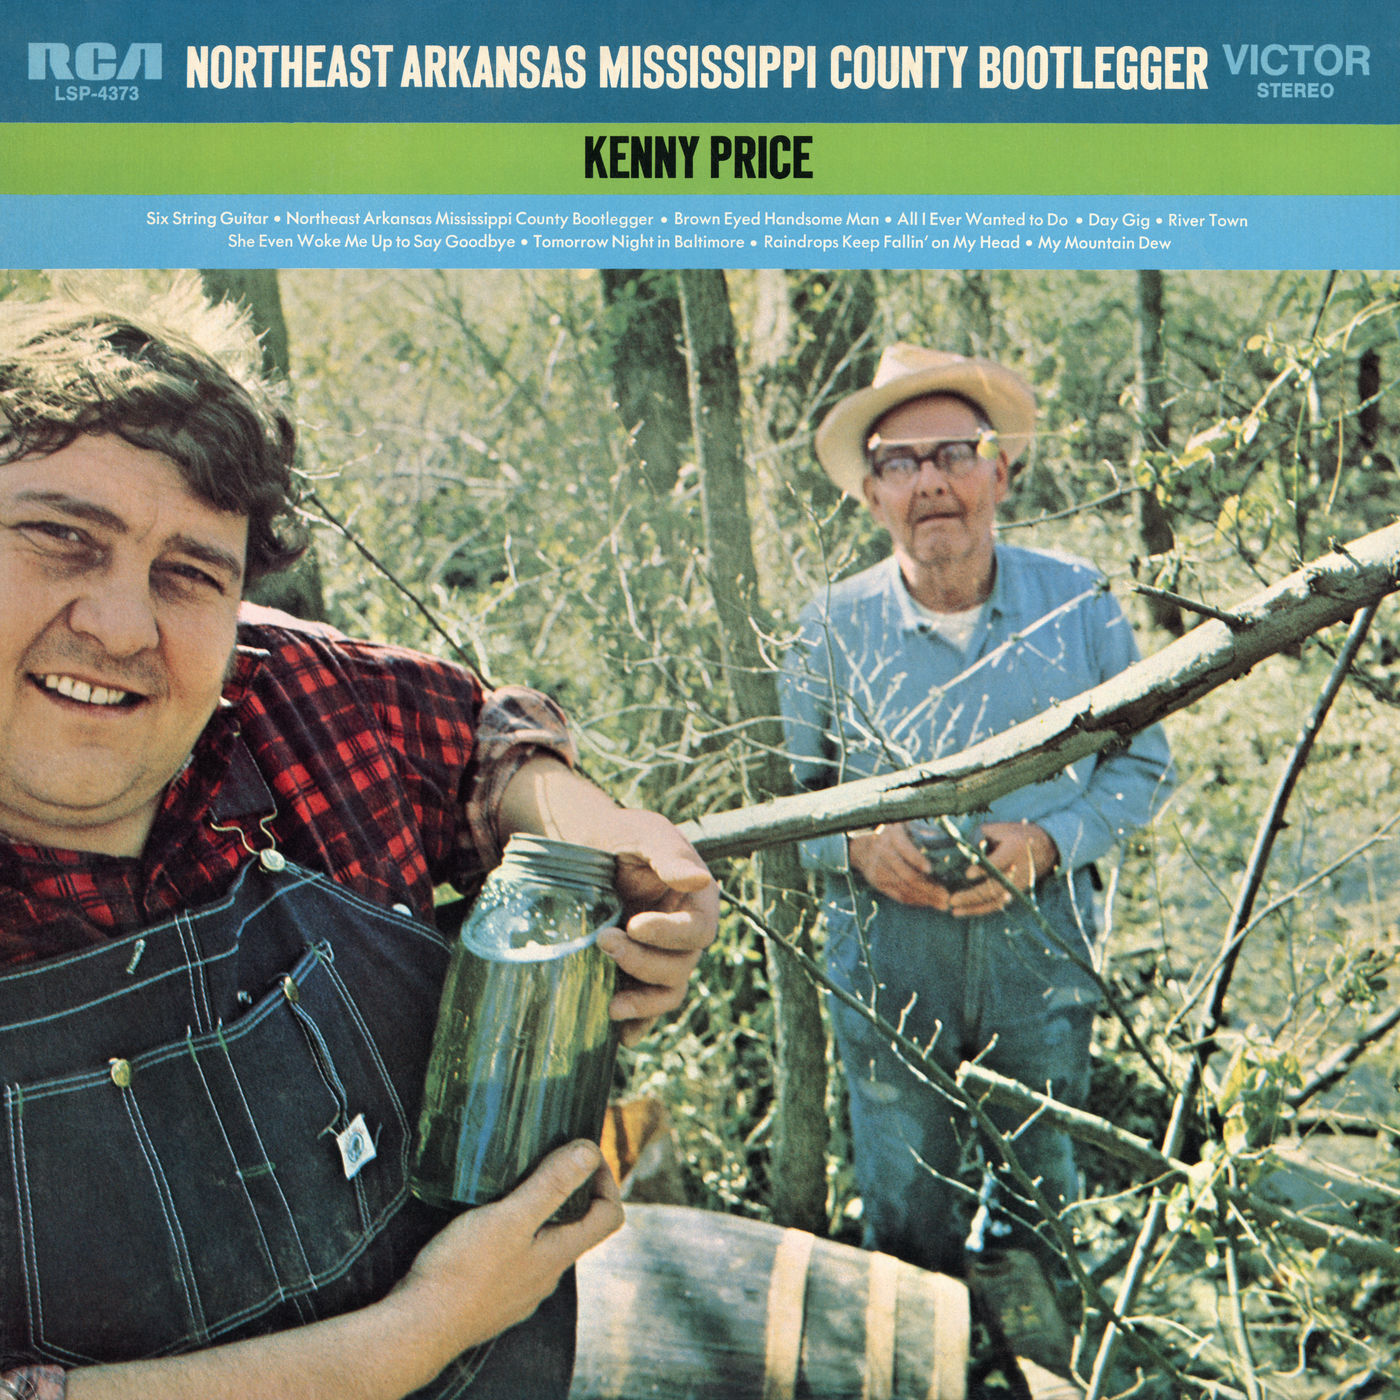 Kenny Price – Northeast Arkansas Mississippi County Bootlegger